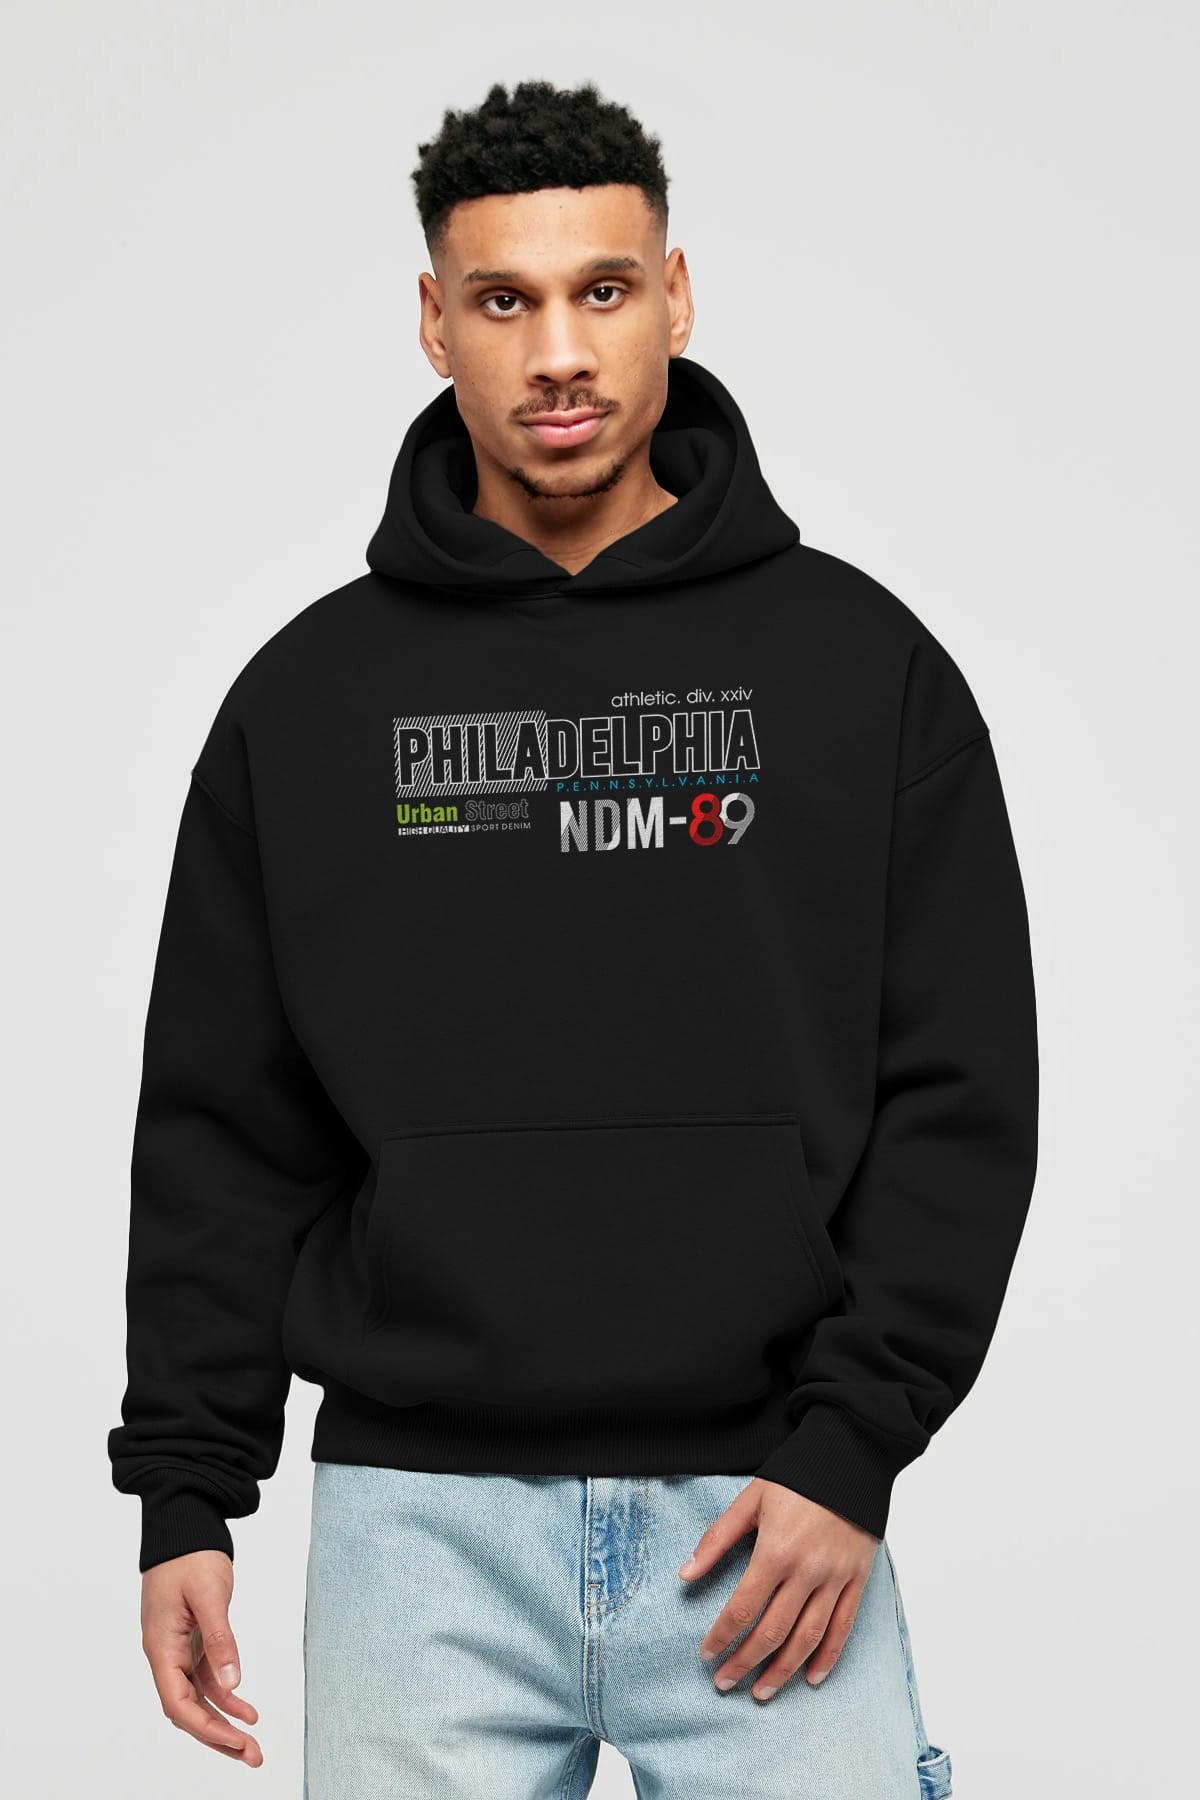 Philadelphia 89 Ön Baskılı Oversize Hoodie Kapüşonlu Sweatshirt Erkek Kadın Unisex